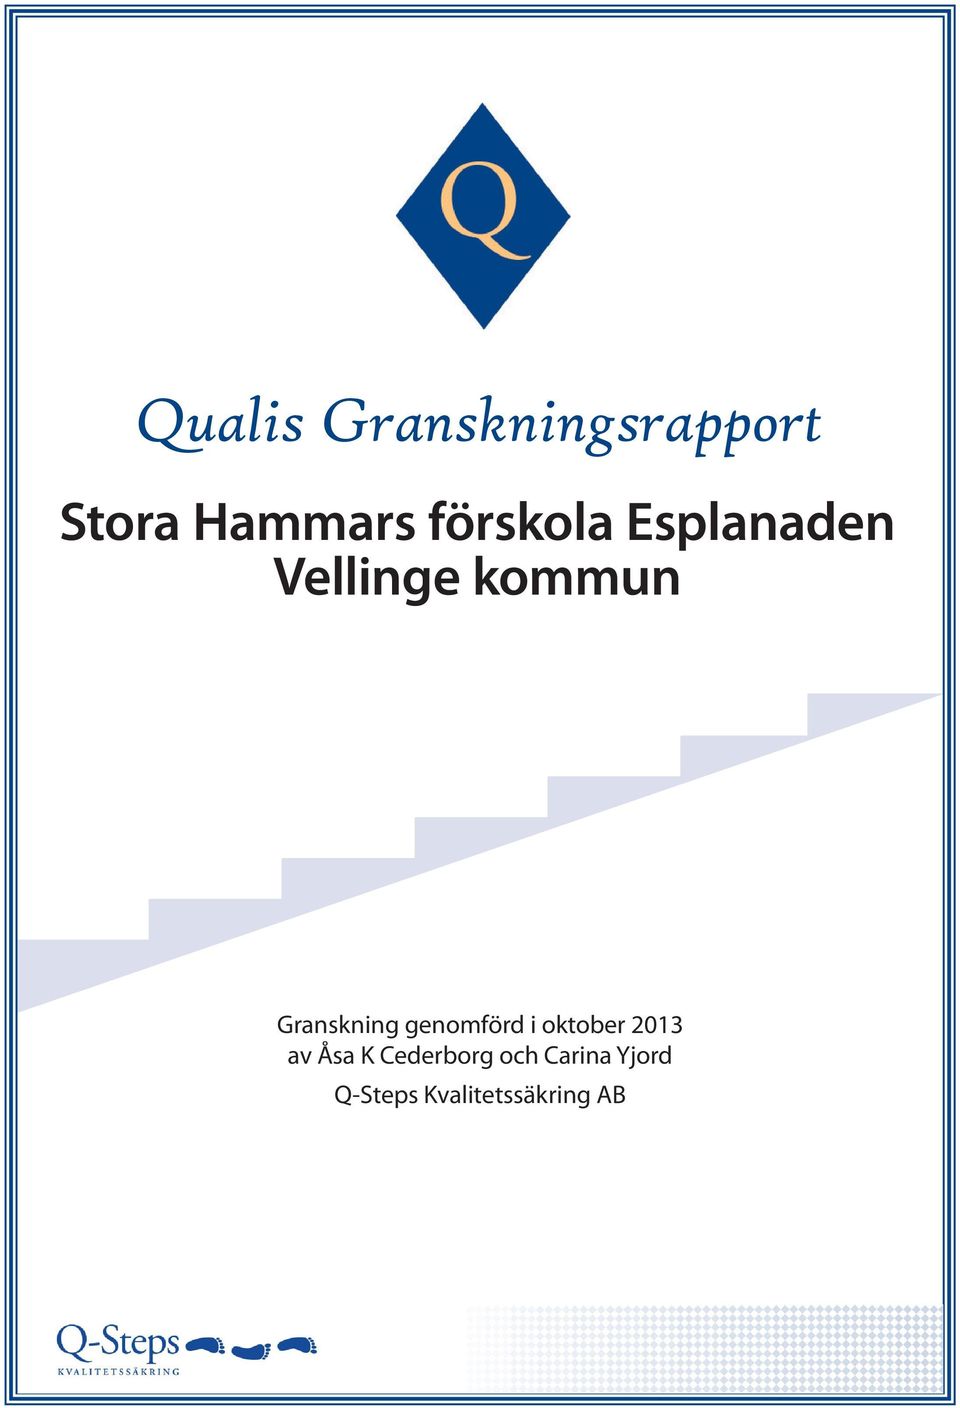 Granskning genomförd i oktober 2013 av Åsa